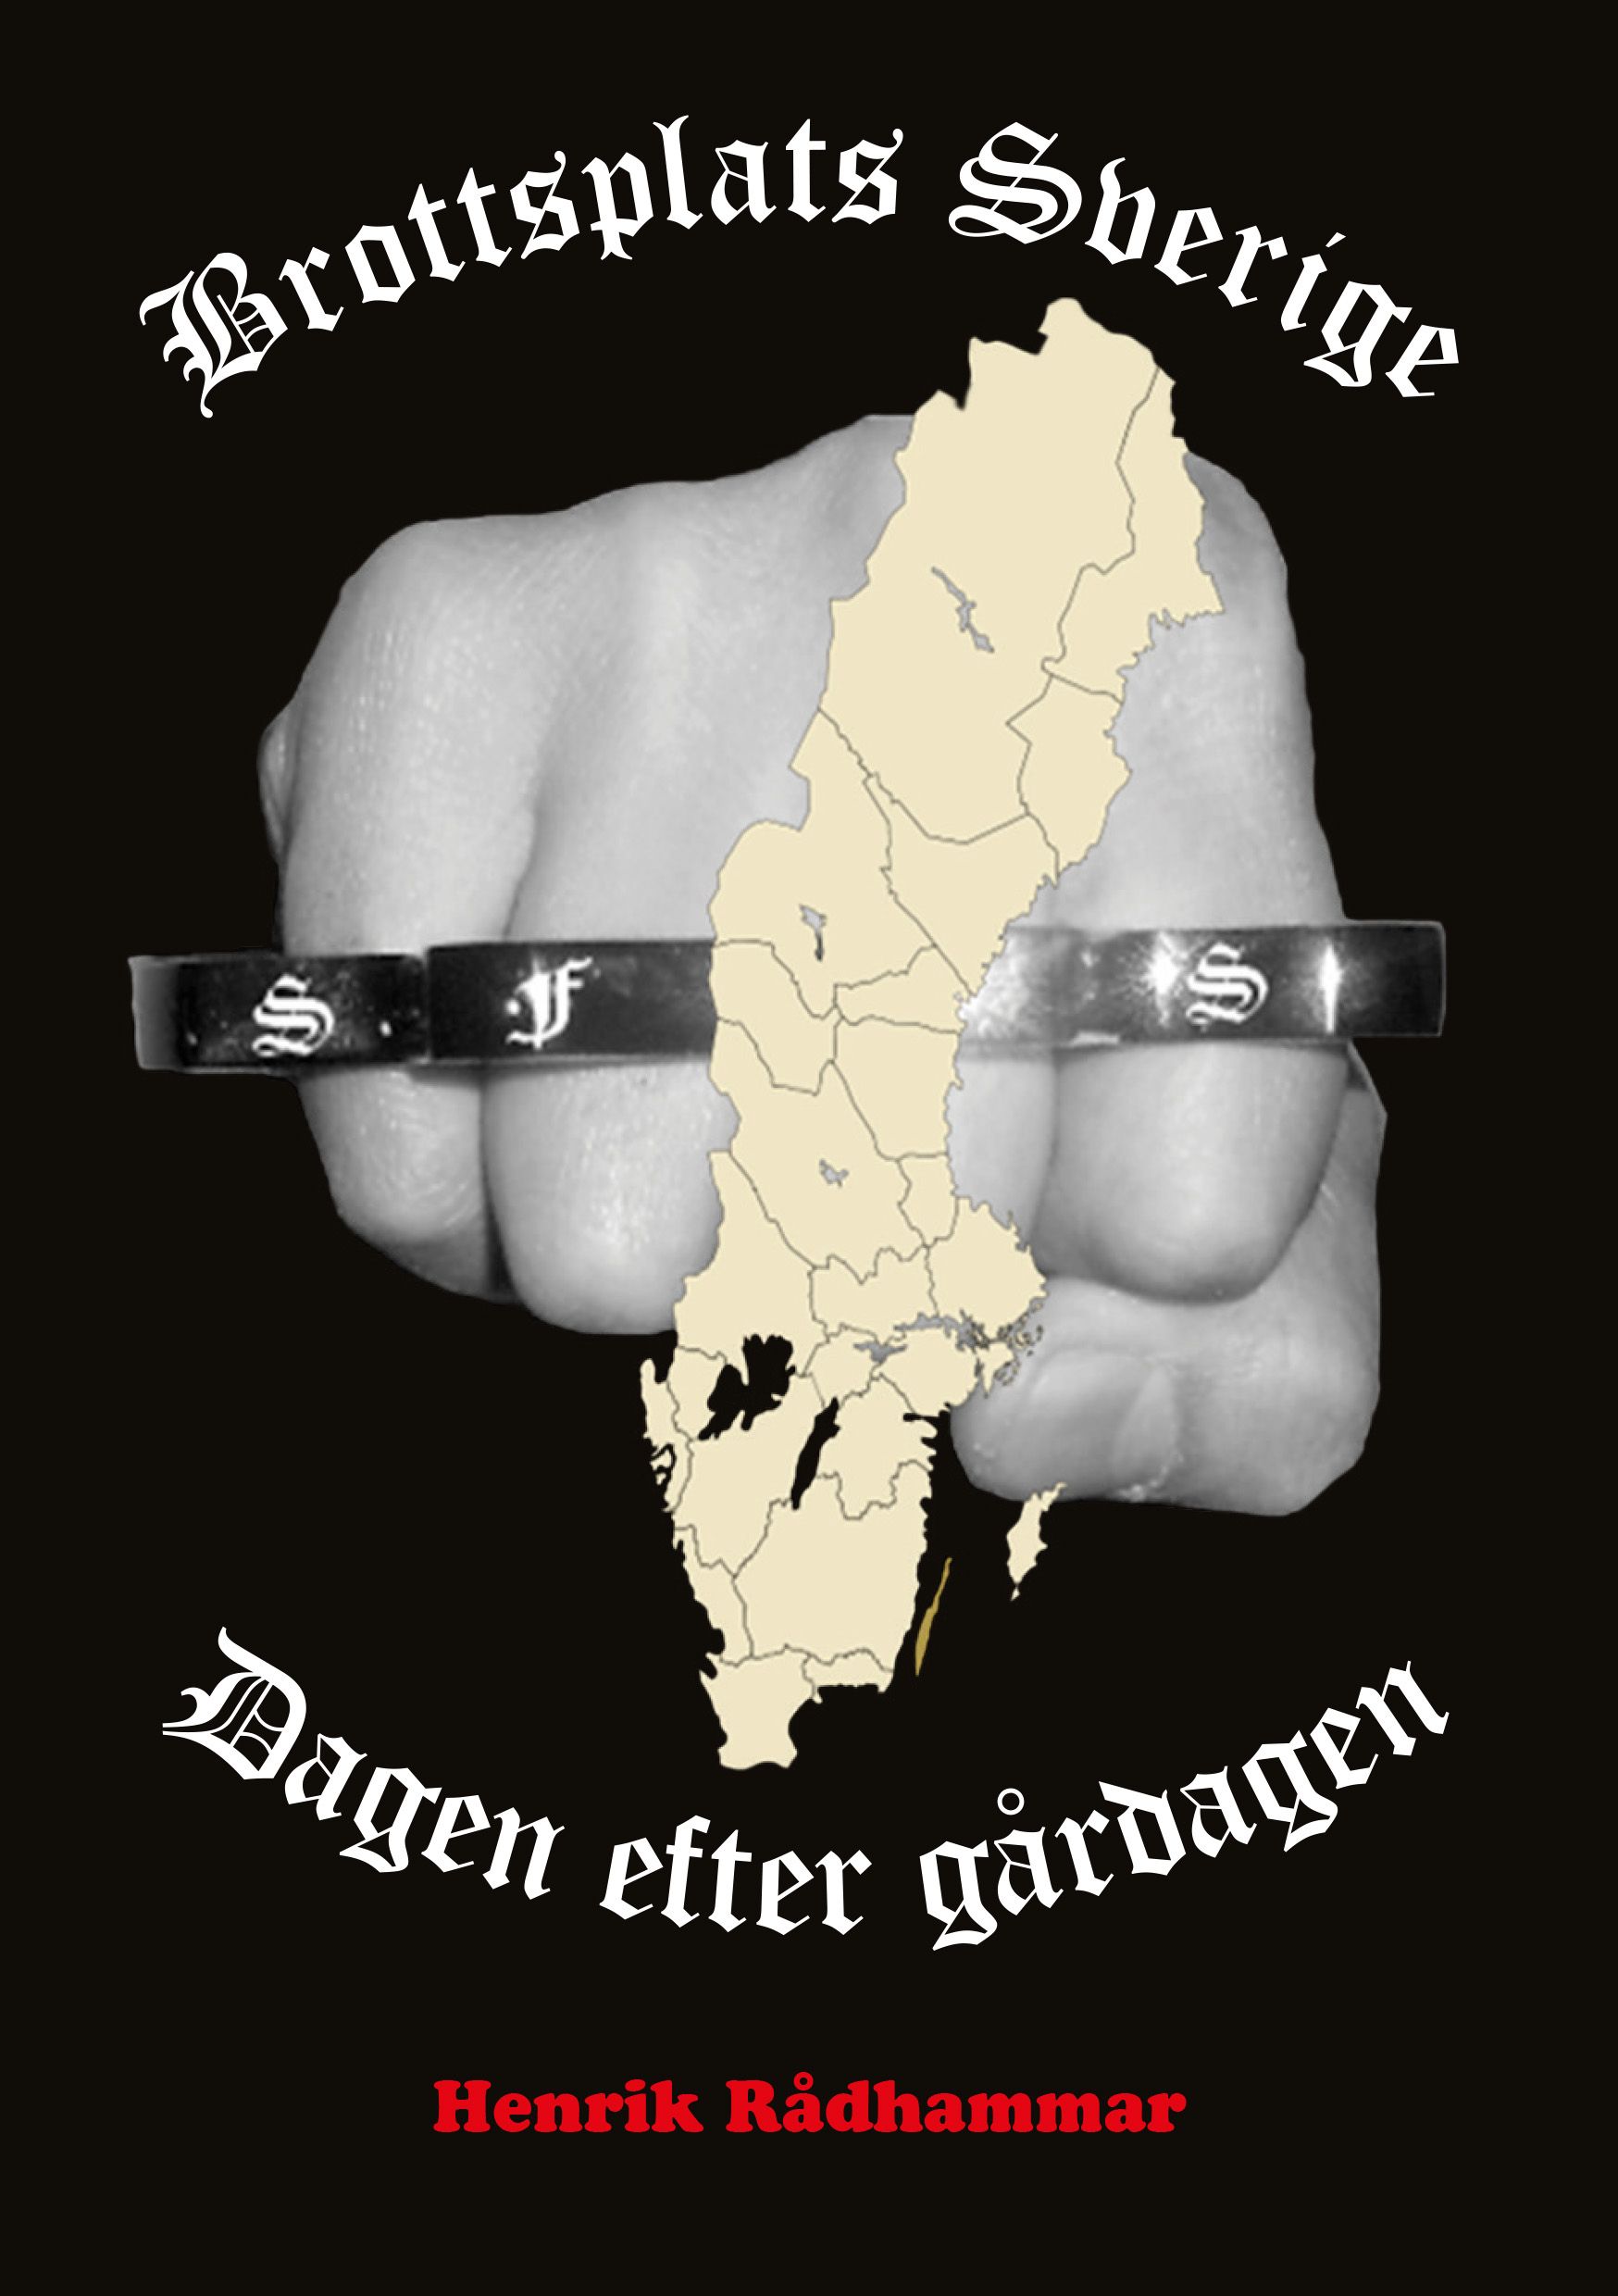 Brottsplats Sverige - Dagen efter gårdagen, e-bog af Henrik Rådhammar